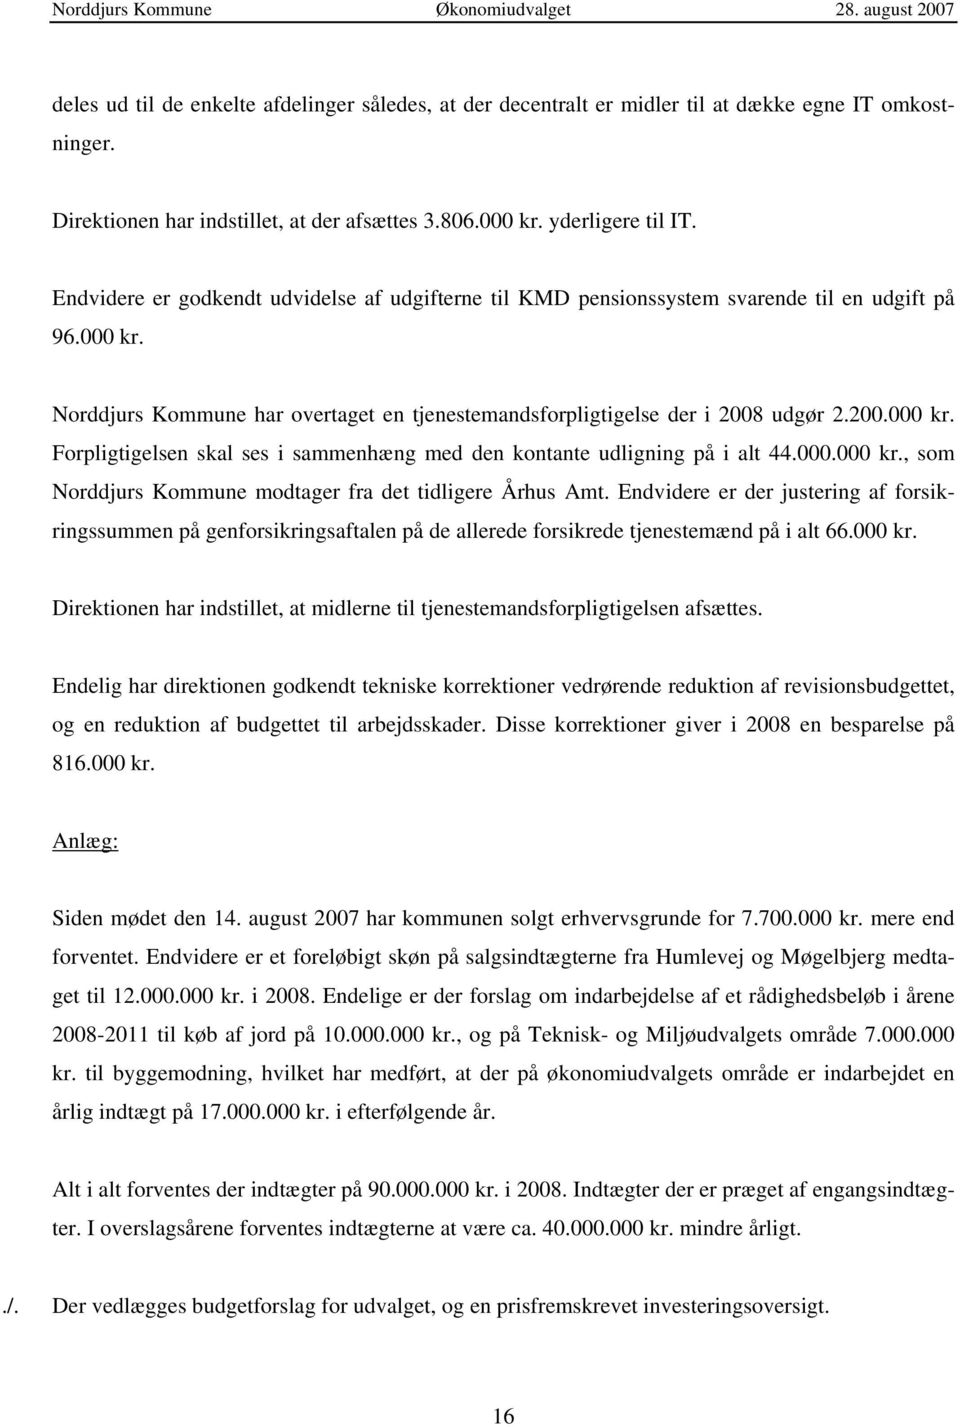 000.000 kr., som Norddjurs Kommune modtager fra det tidligere Århus Amt. Endvidere er der justering af forsikringssummen på genforsikringsaftalen på de allerede forsikrede tjenestemænd på i alt 66.